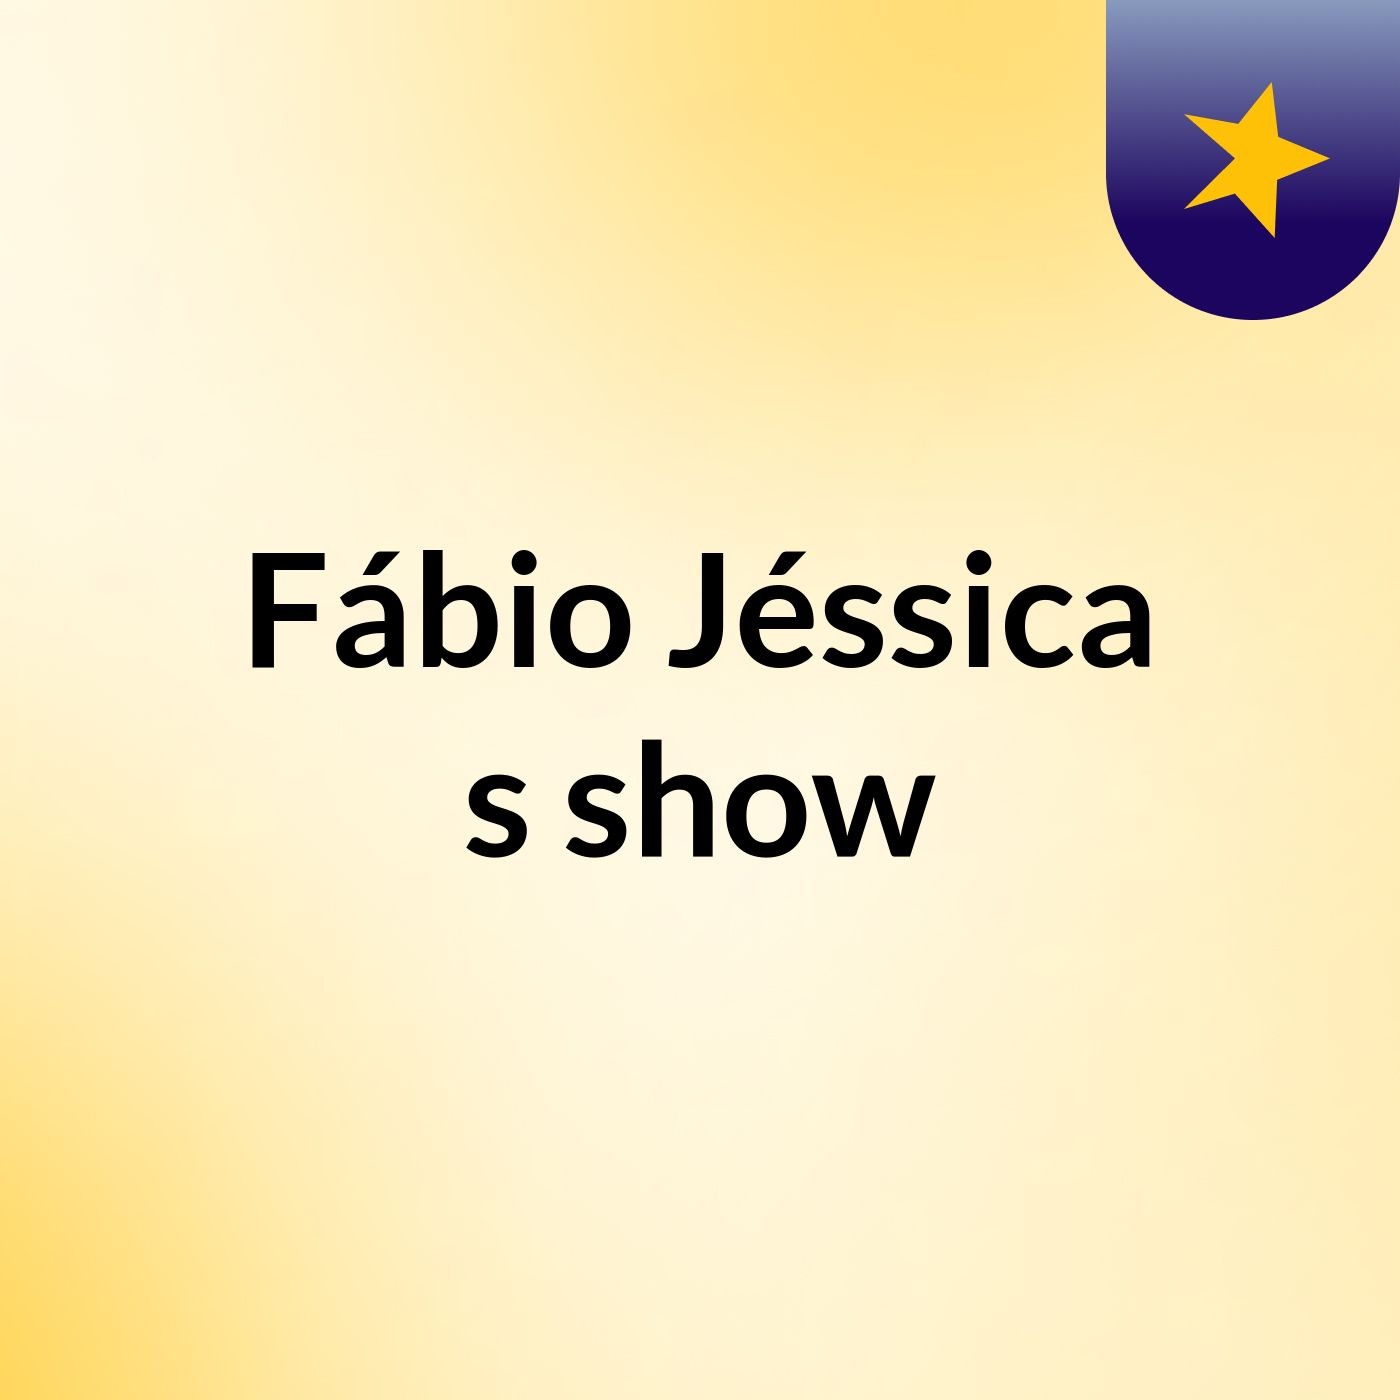 Fábio Jéssica's show